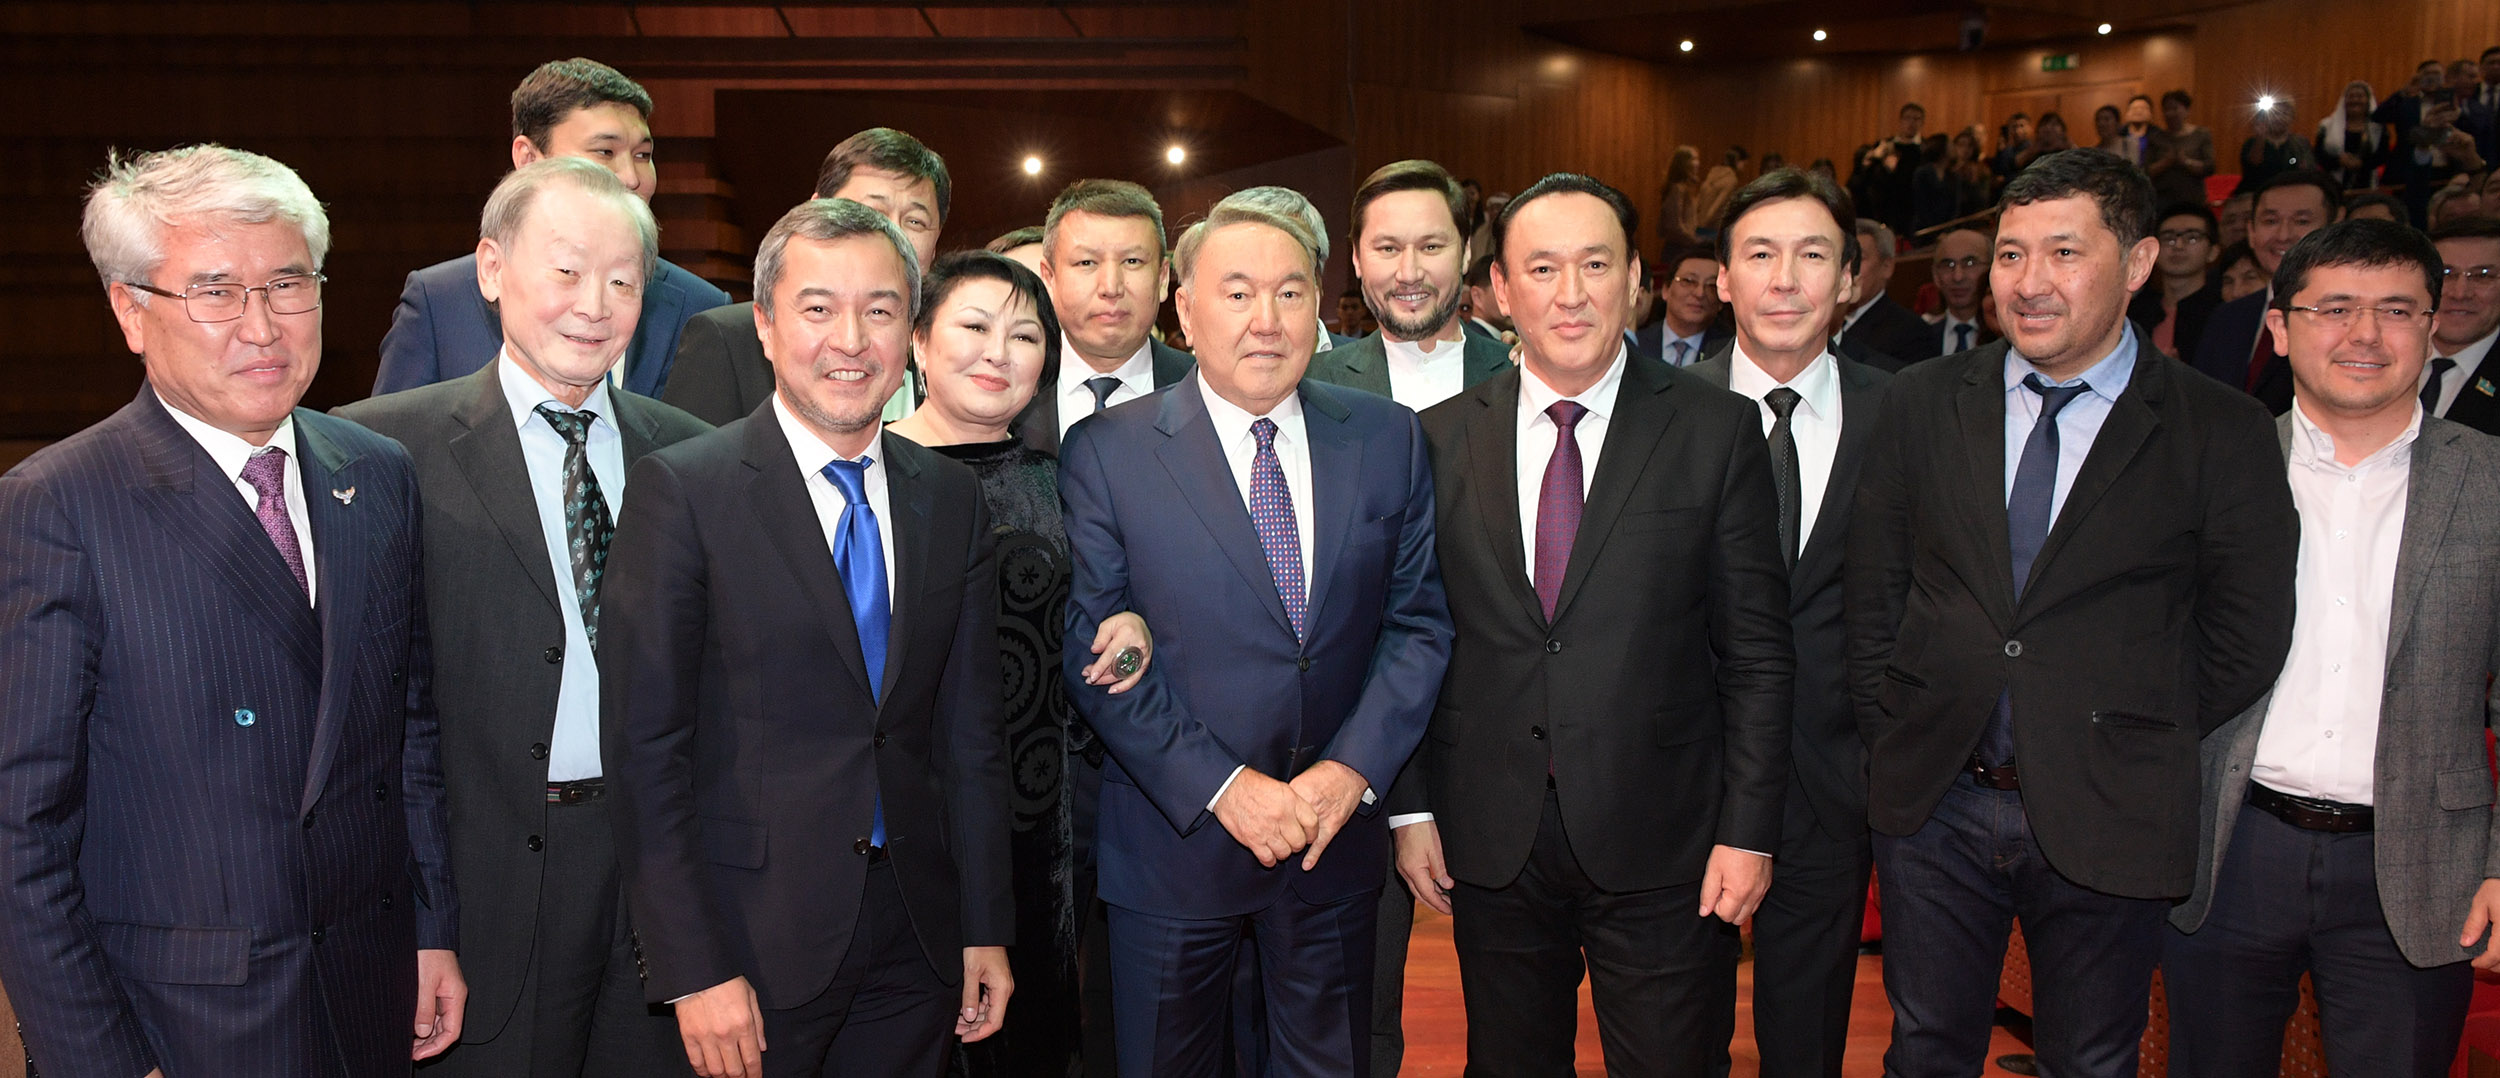 Мемлекет басшысы «Елбасы жолы. Астана» көркем фильмінің премьерасына барды